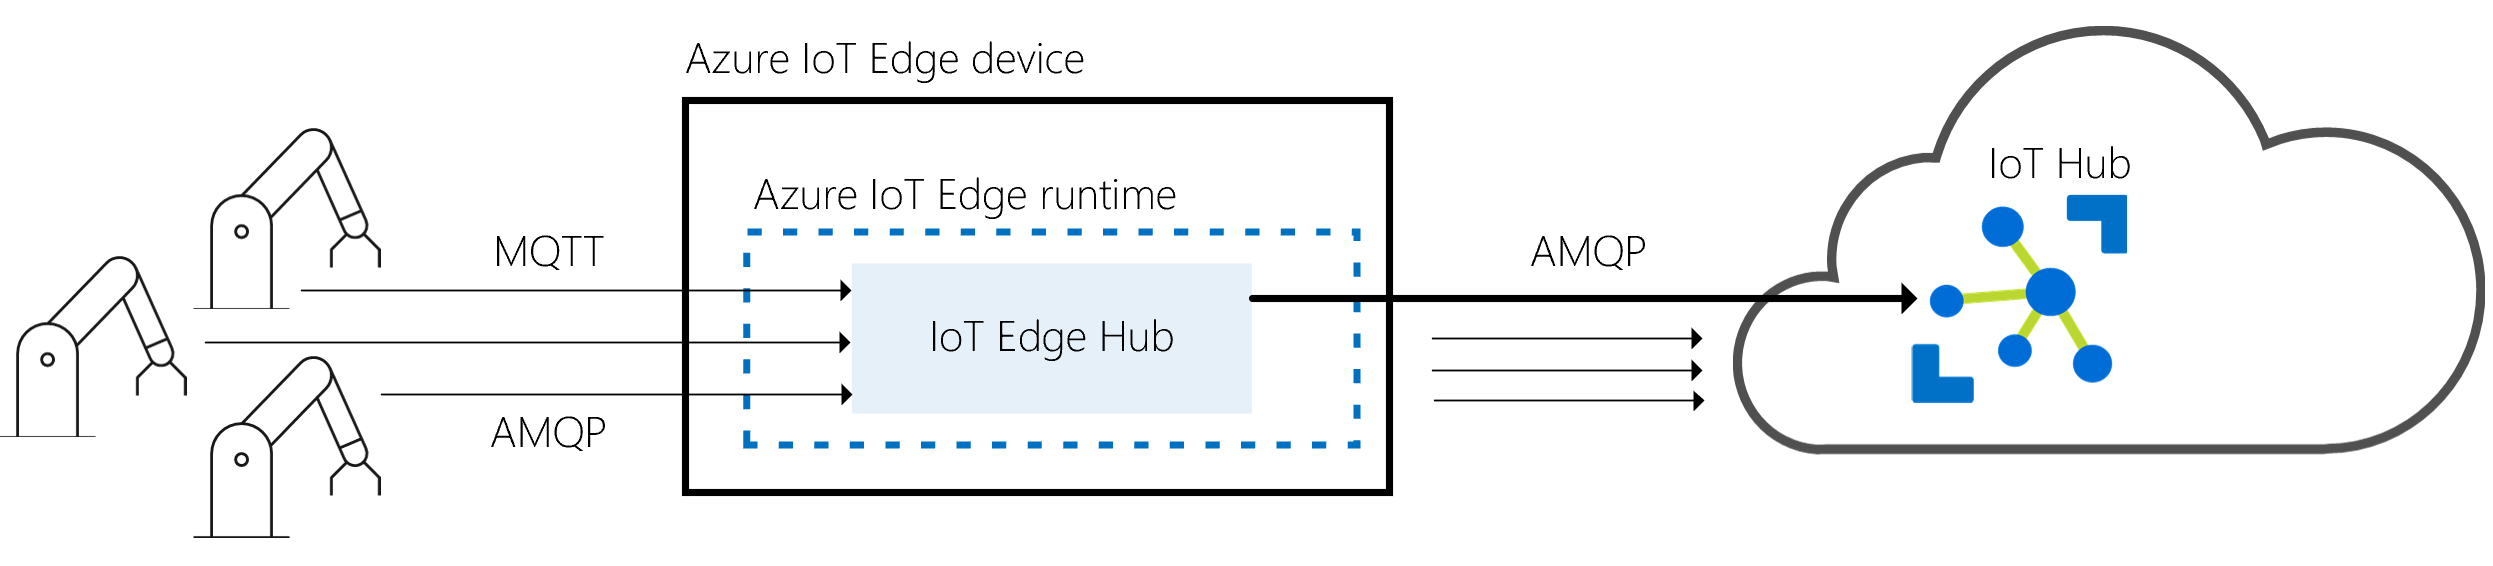 Captura de pantalla que muestra las relaciones con el centro de I O T Edge como puerta de enlace entre dispositivos físicos y I o T Hub.